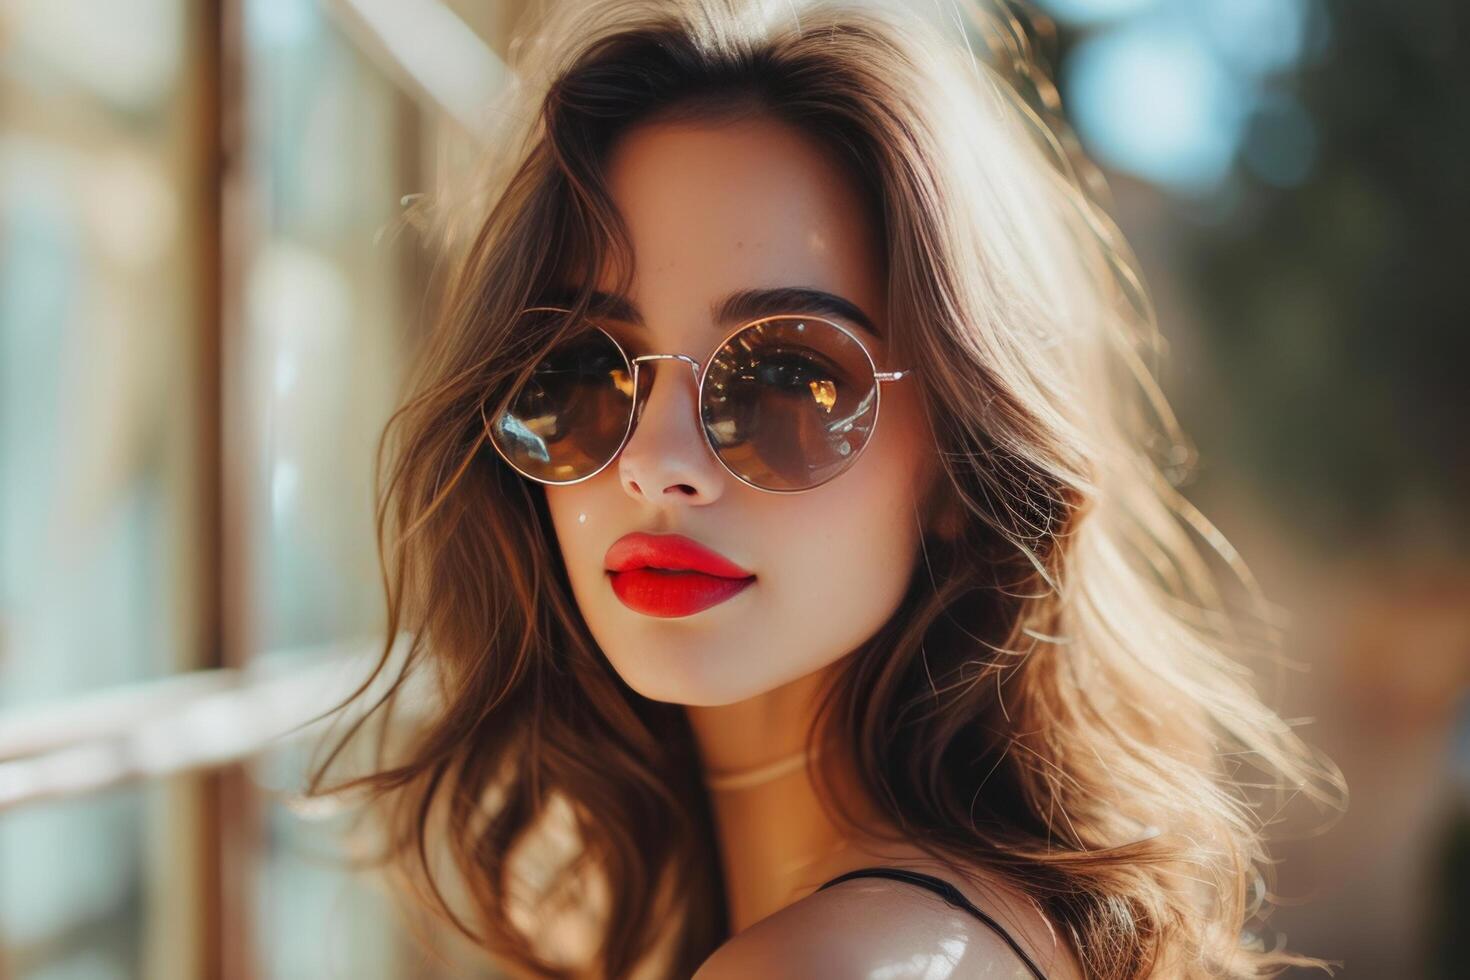 AI generated a beautiful beautiful woman outside with sunglasses and lipstick photo